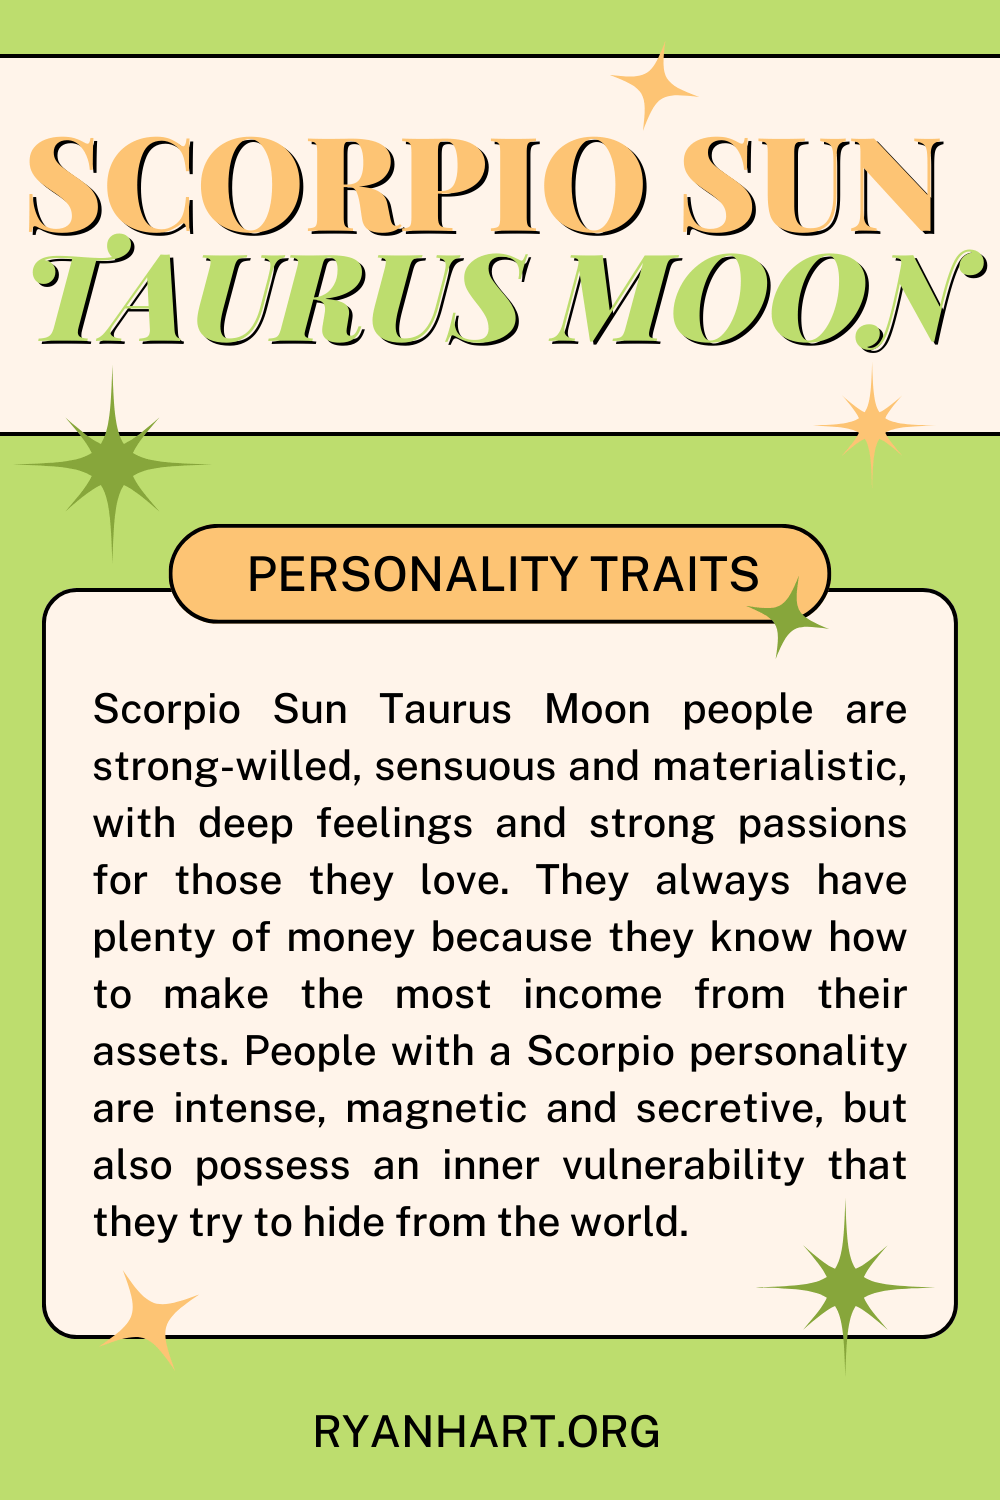 Scorpio Sun Taurus Moon Description